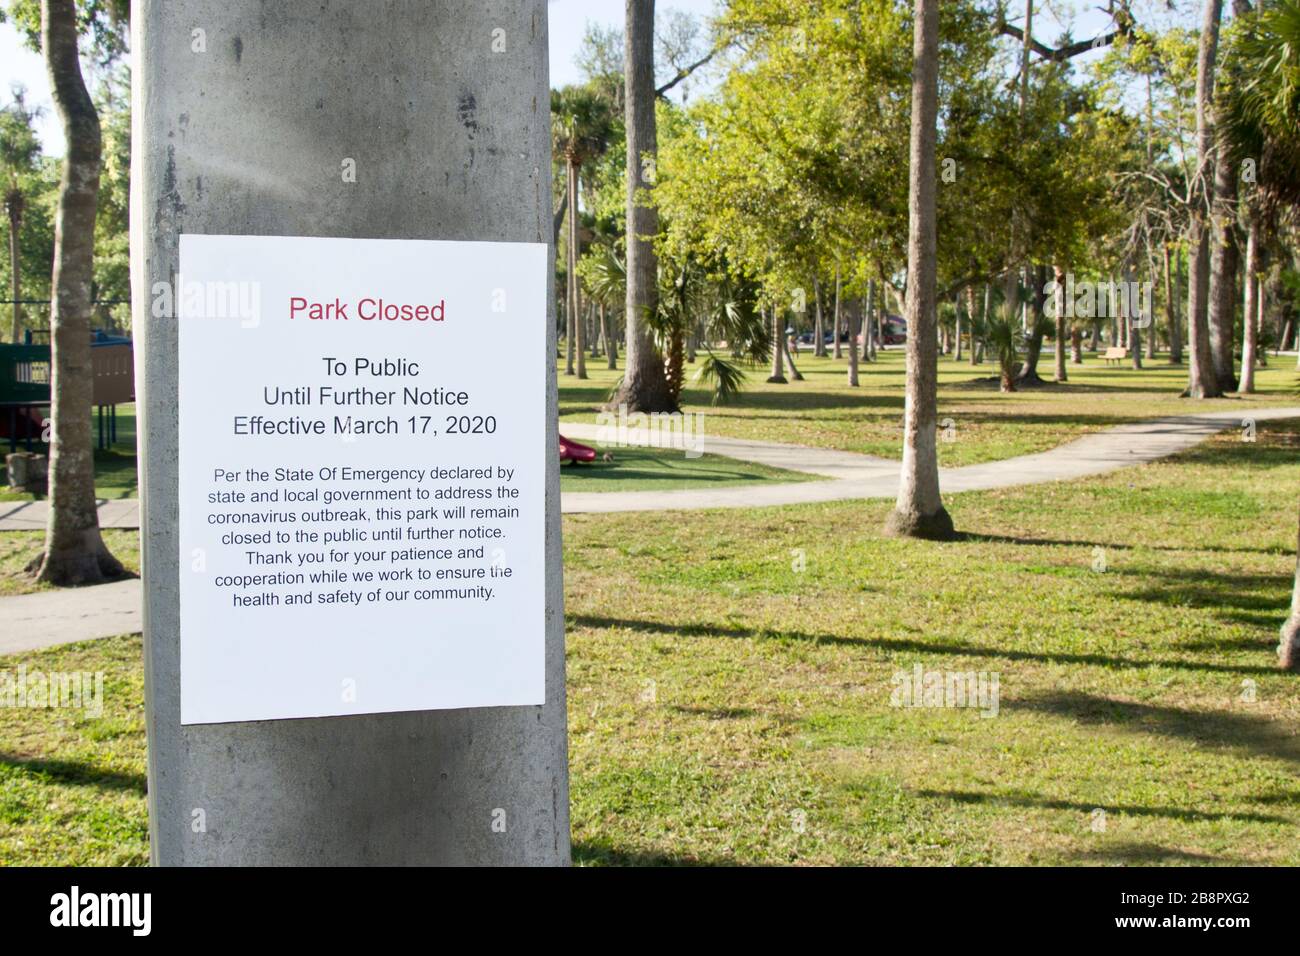 Park closed sign due to covid-19 coronavirus. Stock Photo